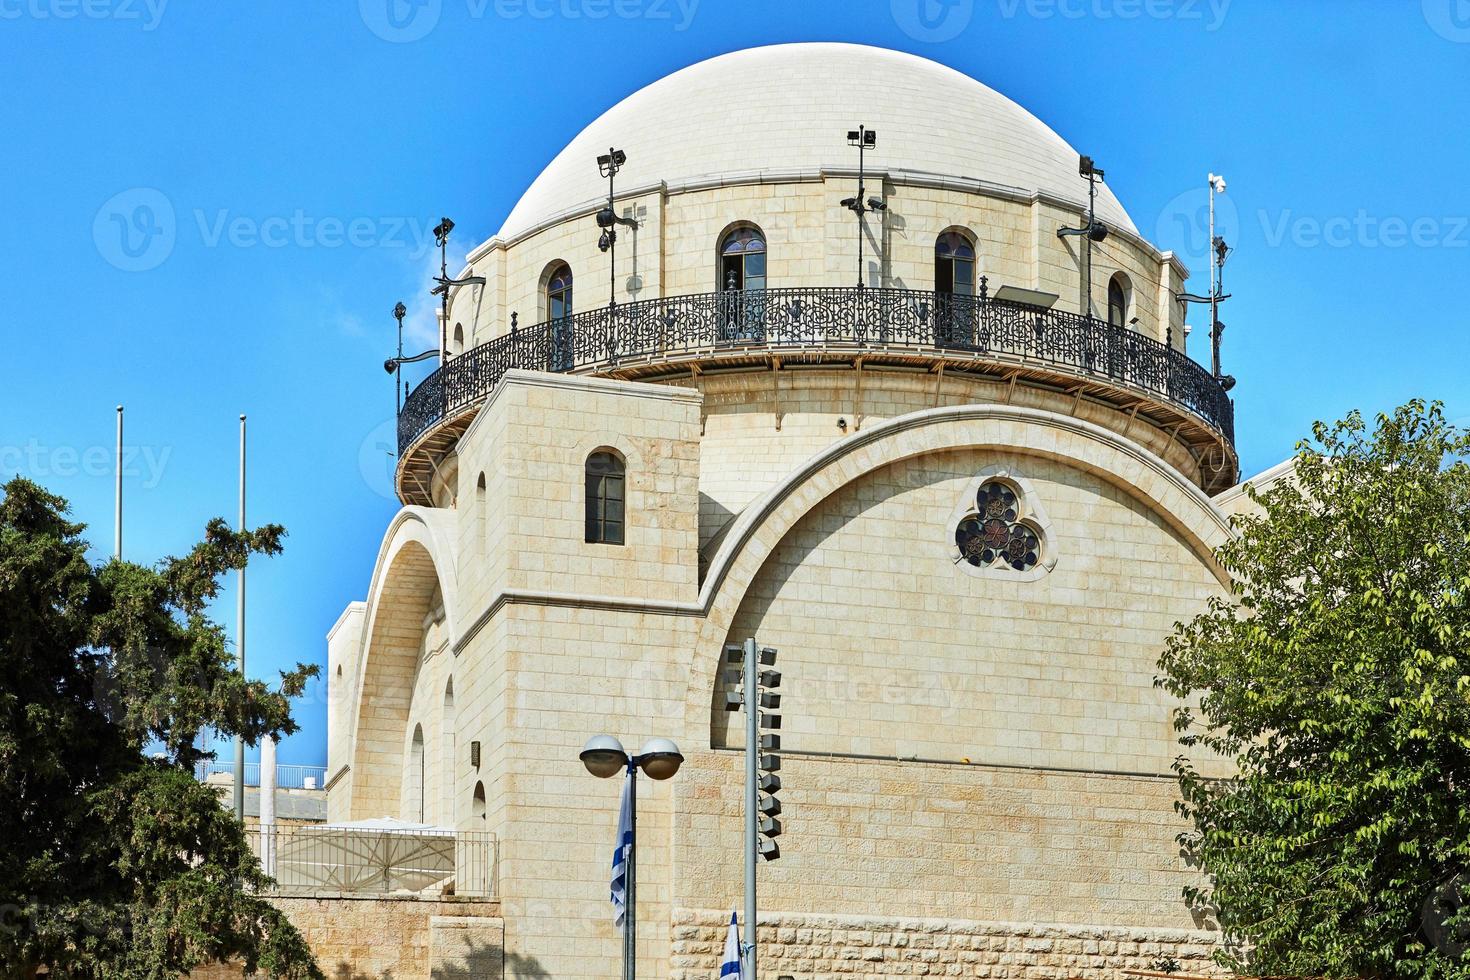 la synagogue ramban est la plus ancienne synagogue en activité de la vieille ville. Jérusalem, Israël. son nom est écrit sur le mur de la synagogue photo